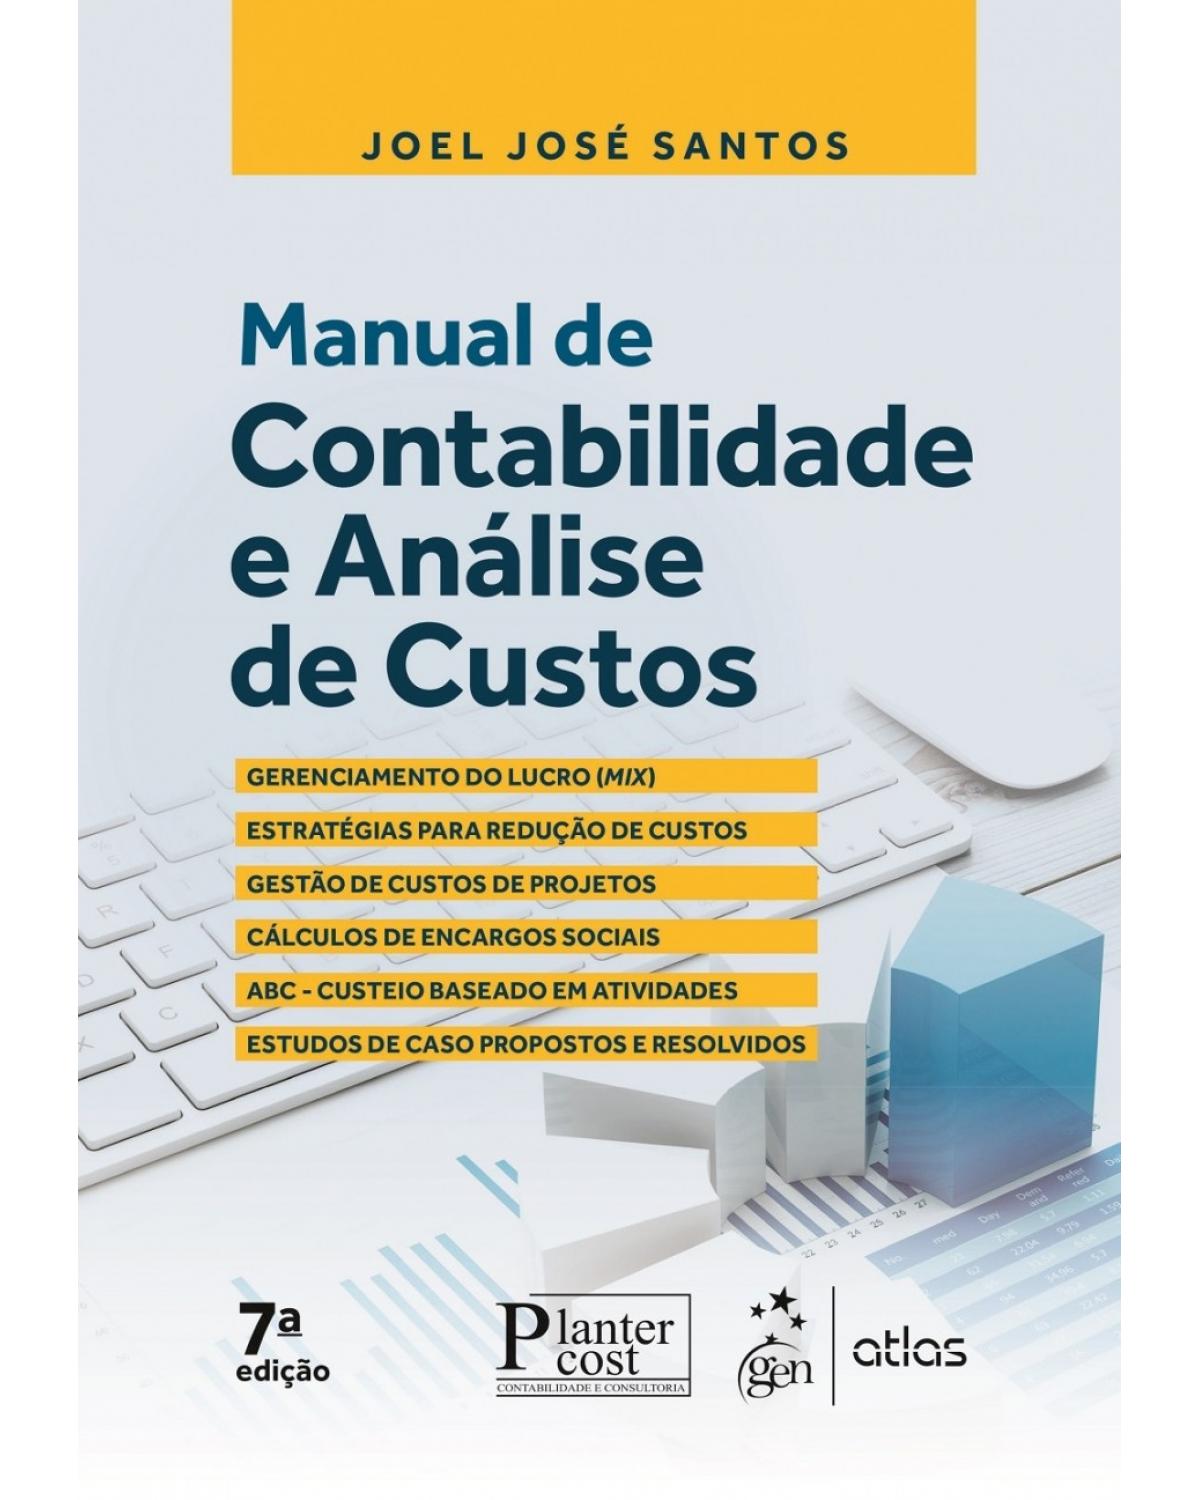 Manual de contabilidade e análise de custos - 7ª Edição | 2017